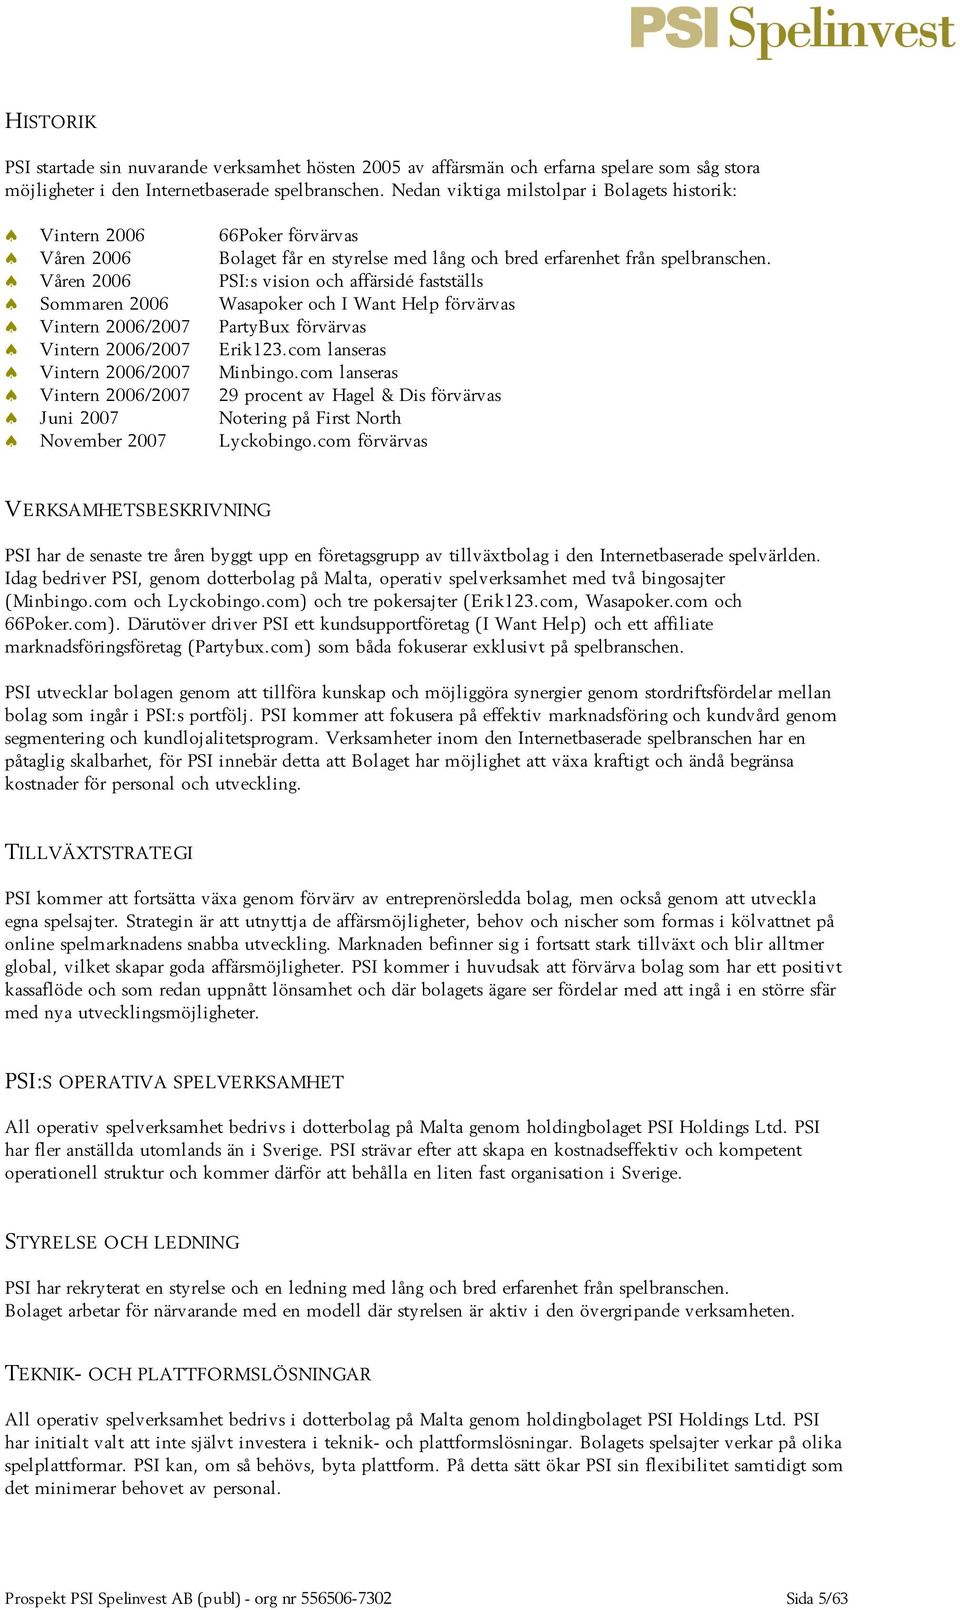 Våren 2006 PSI:s vision och affärsidé fastställs Sommaren 2006 Wasapoker och I Want Help förvärvas Vintern 2006/2007 PartyBux förvärvas Vintern 2006/2007 Erik123.